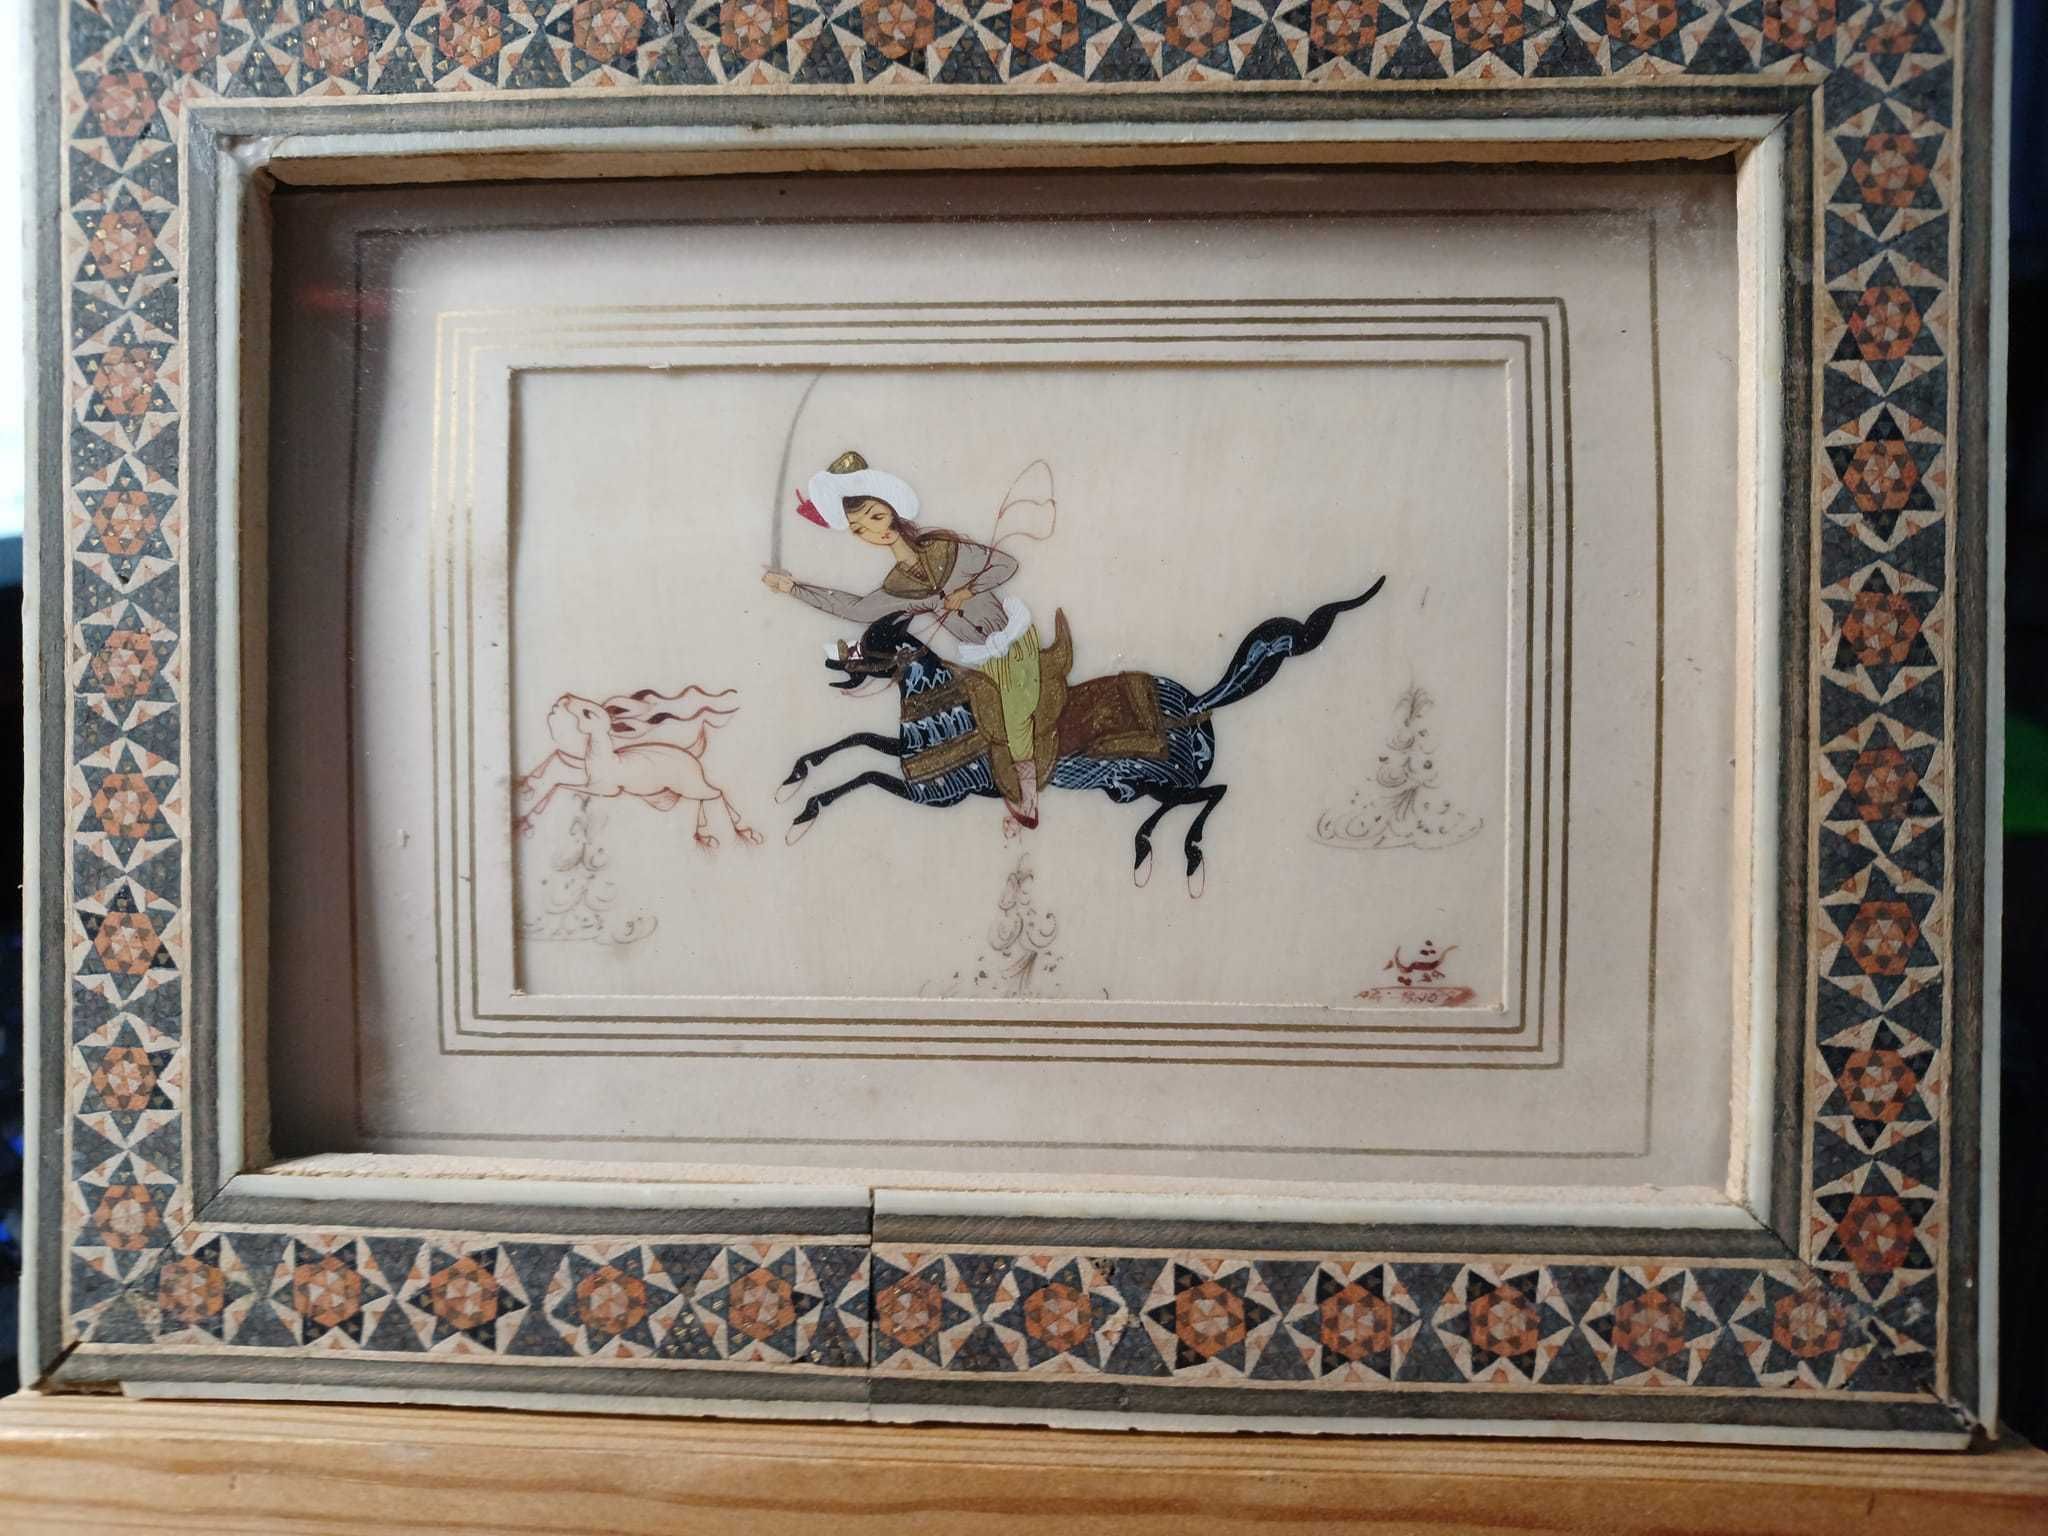 Miniatura indo-persana cu scena de vanatoare